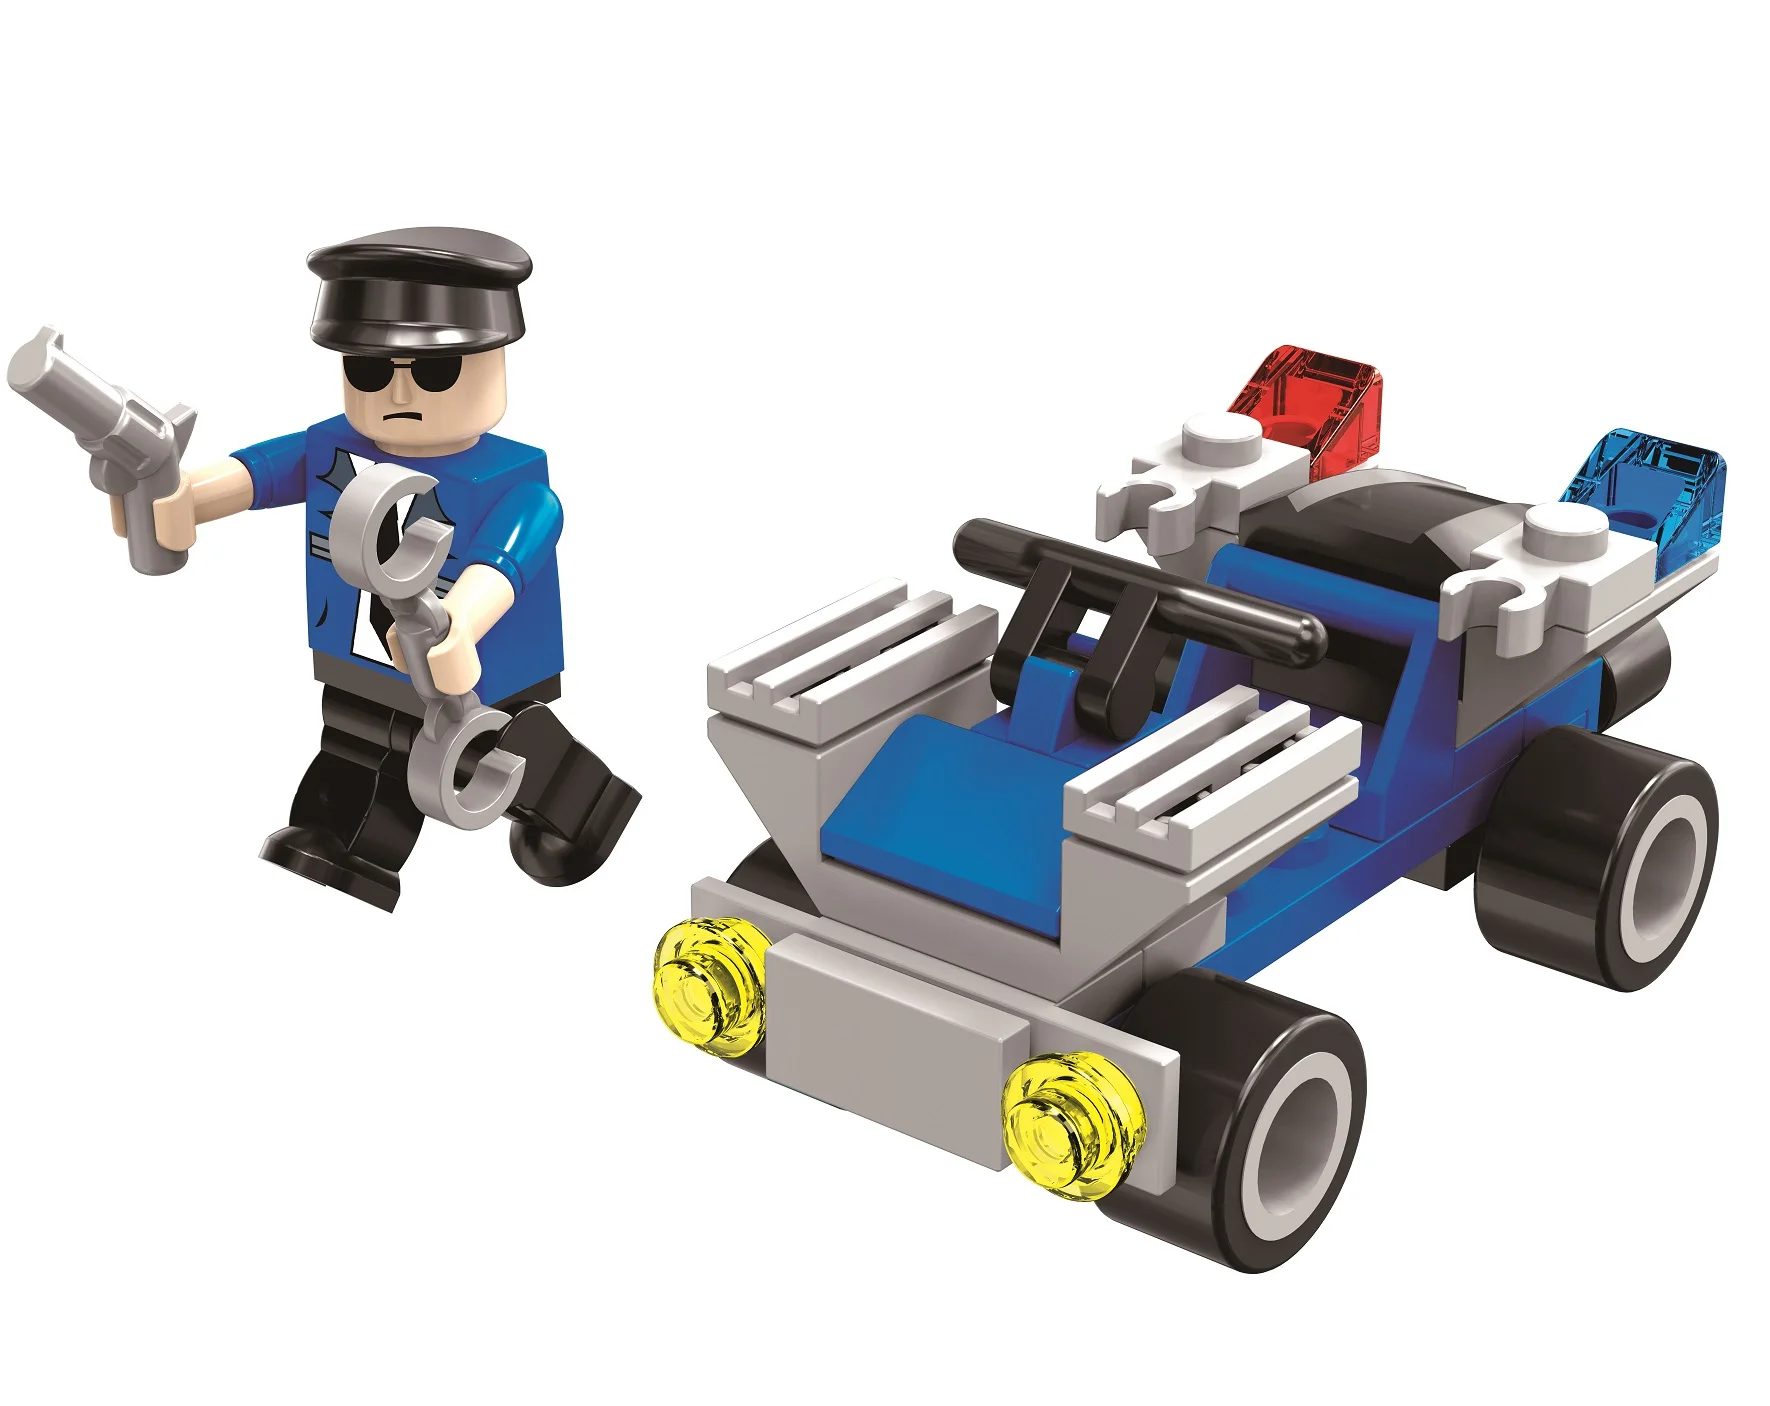 
Обучающие пластиковые полицейские строительные блоки, совместимые с Lego игрушки для детей  (62401709289)